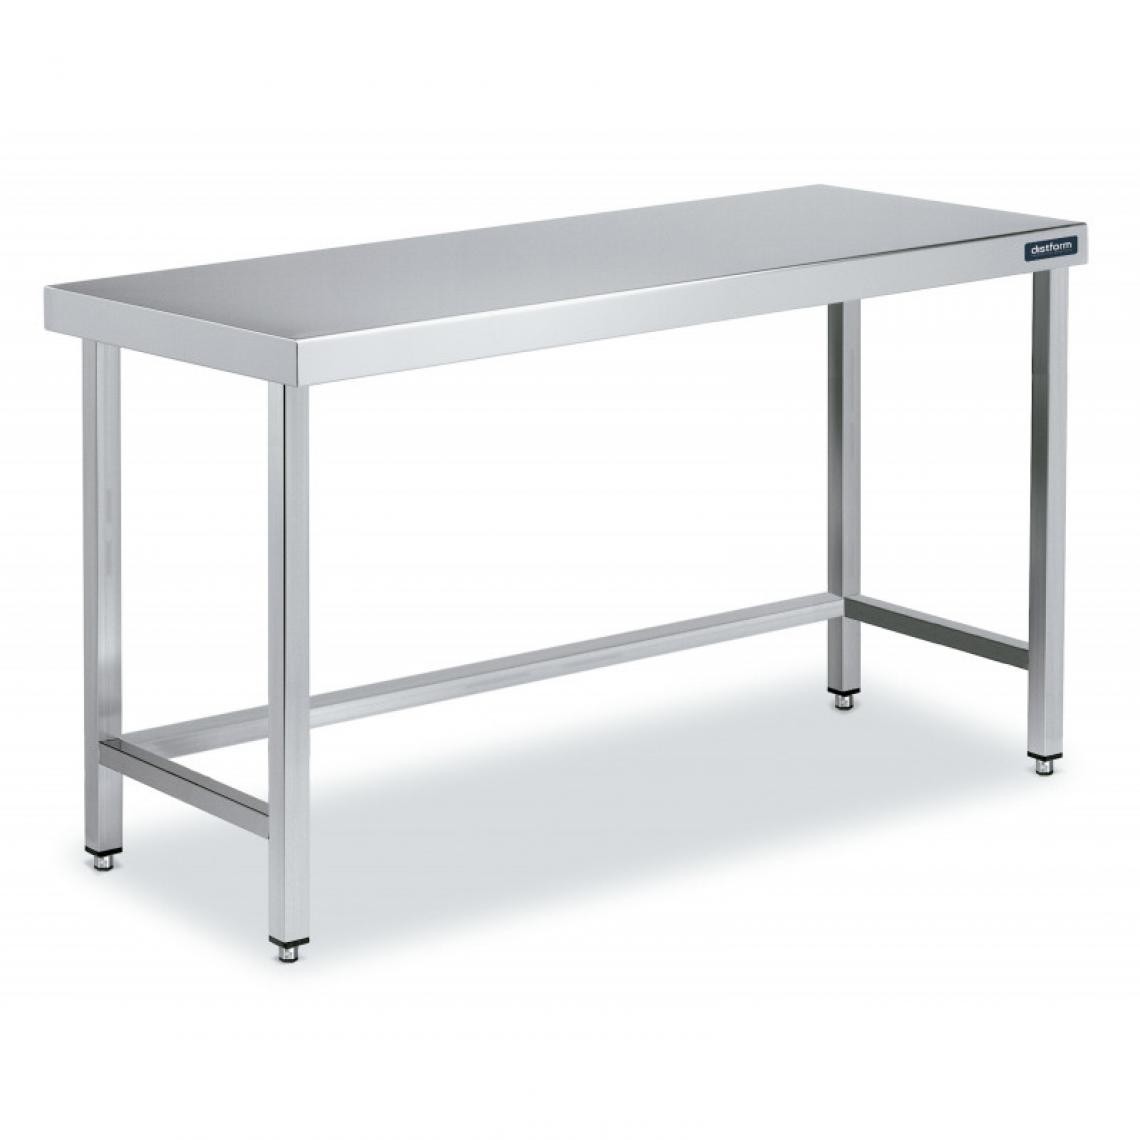 DISTFORM - Table Centrale en Inox avec renforts Profondeur 600mm - Distform - Acier inoxydable2600x600 - Tables à manger